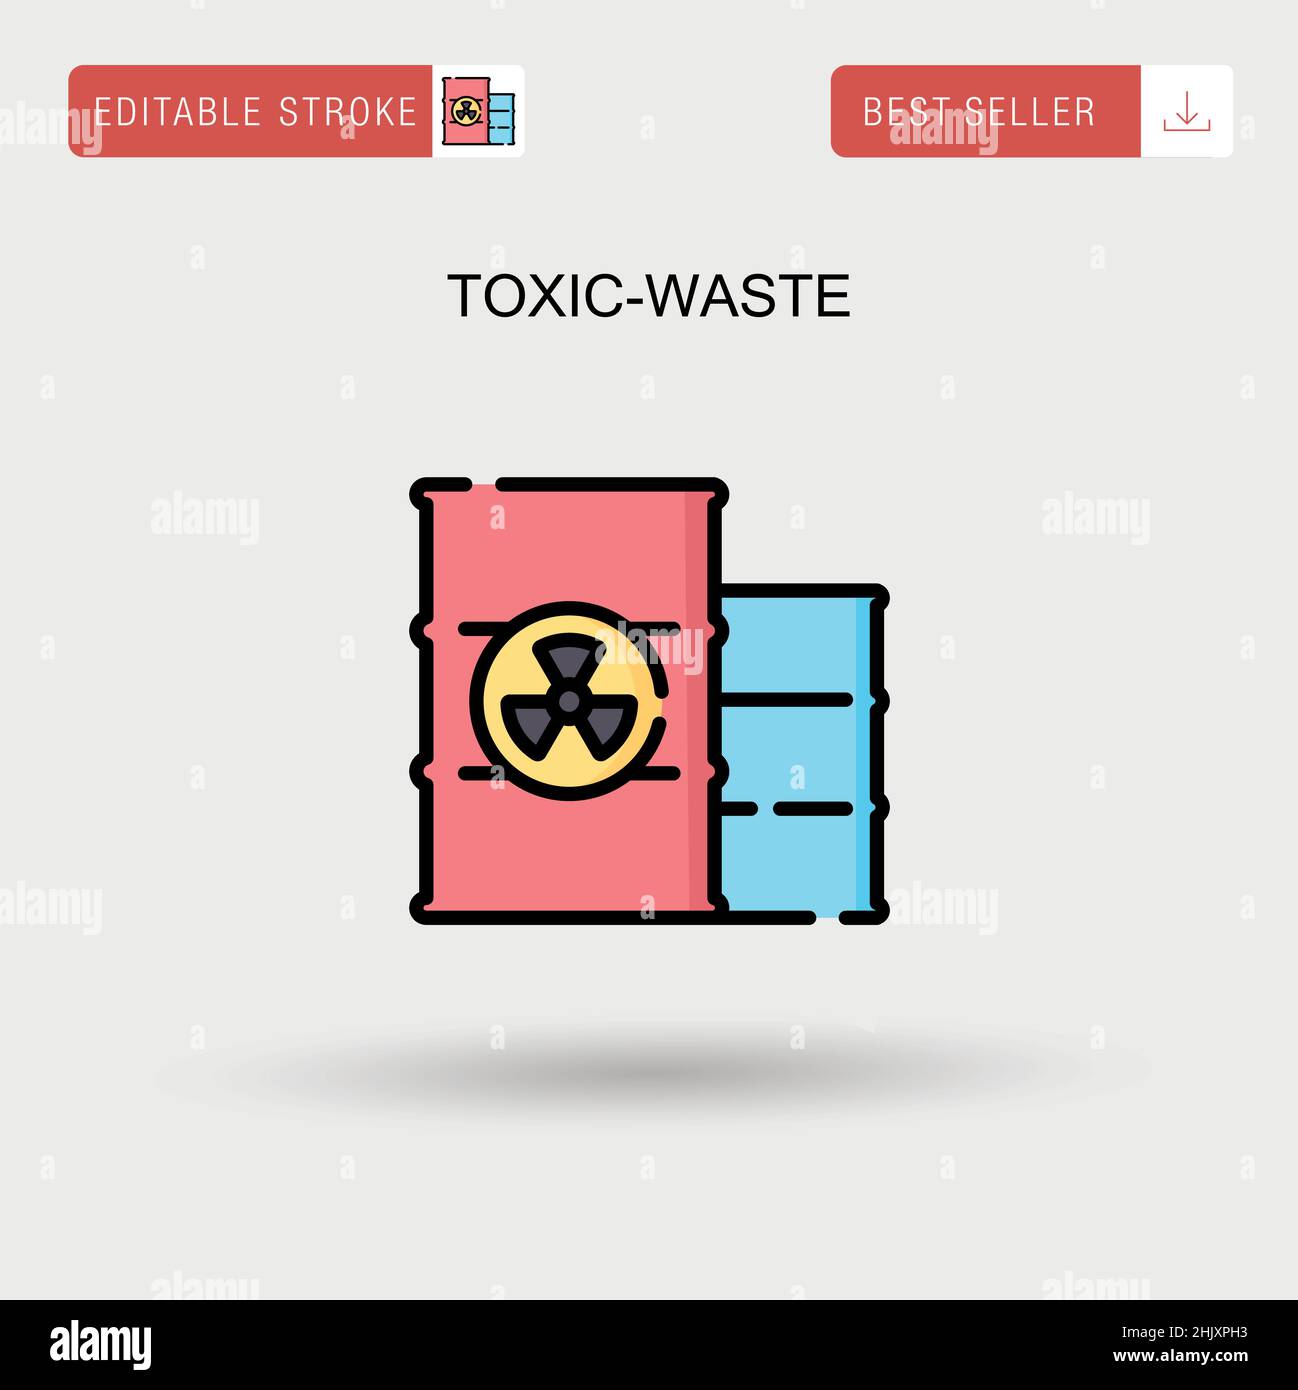 Toxic-waste Simple vector icon. Stock Vector